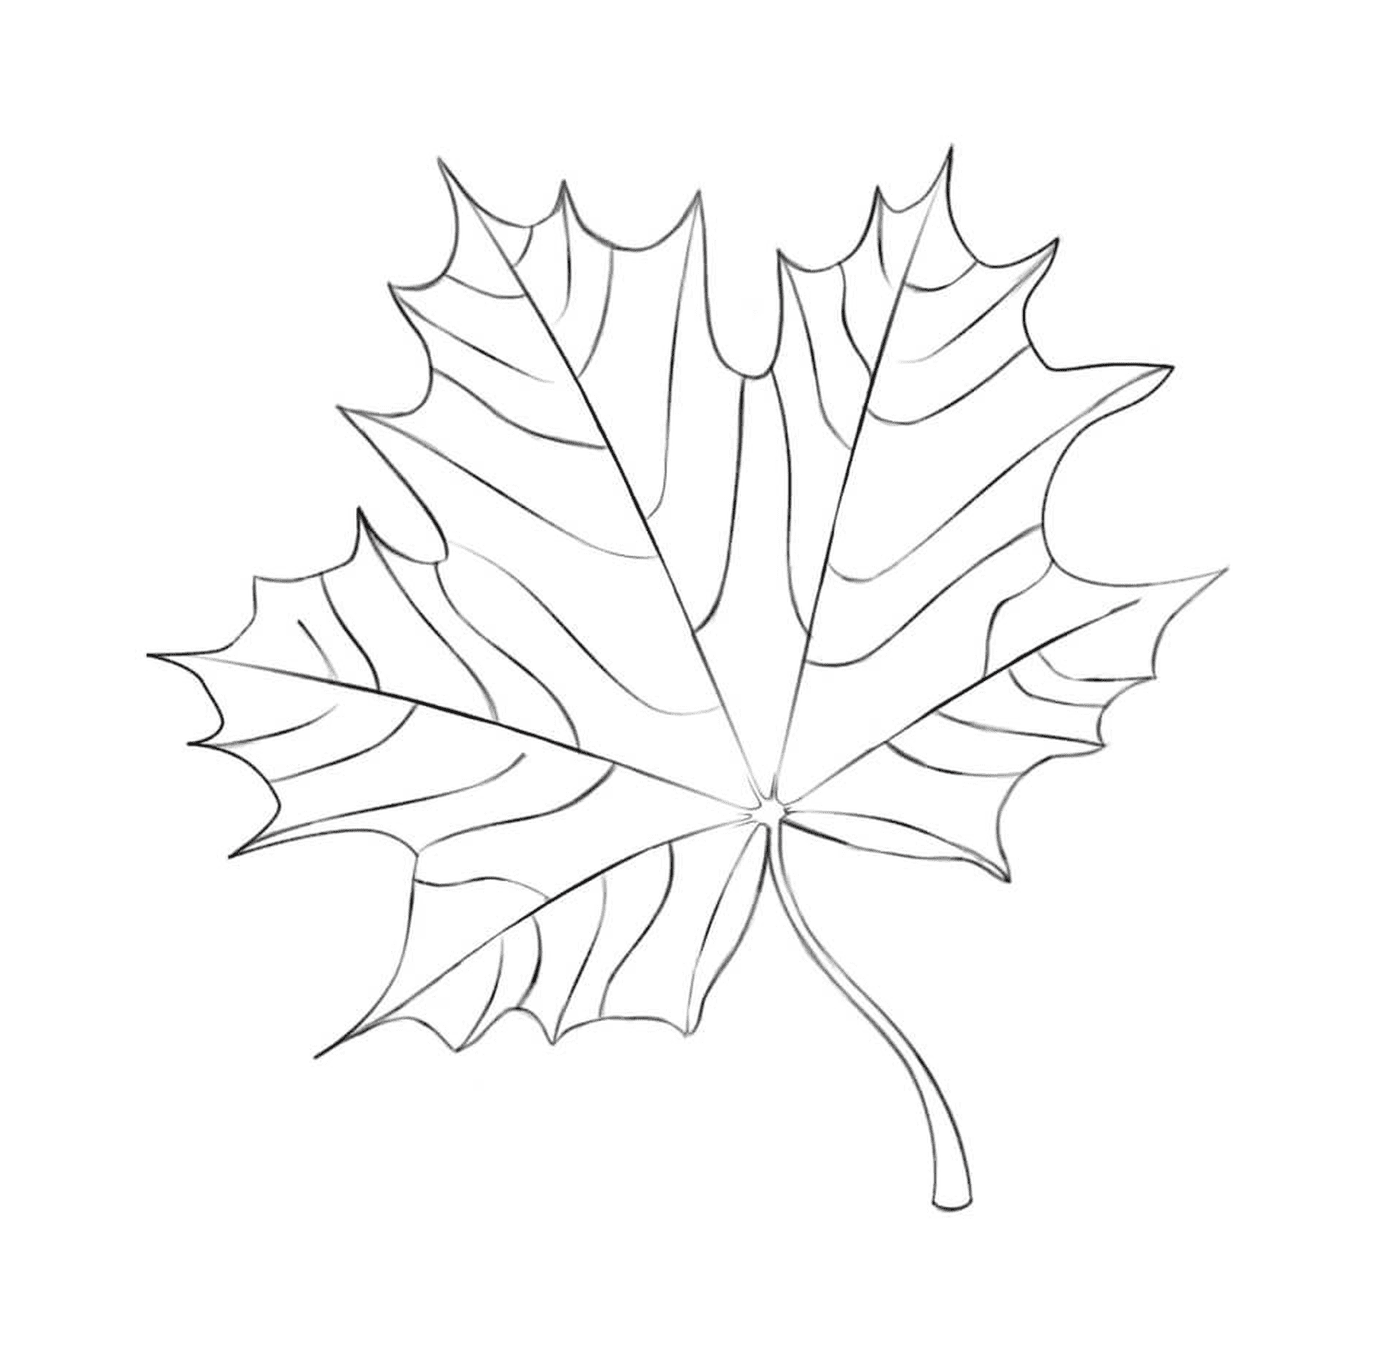  Ein gezeichnetes Ahornblatt 